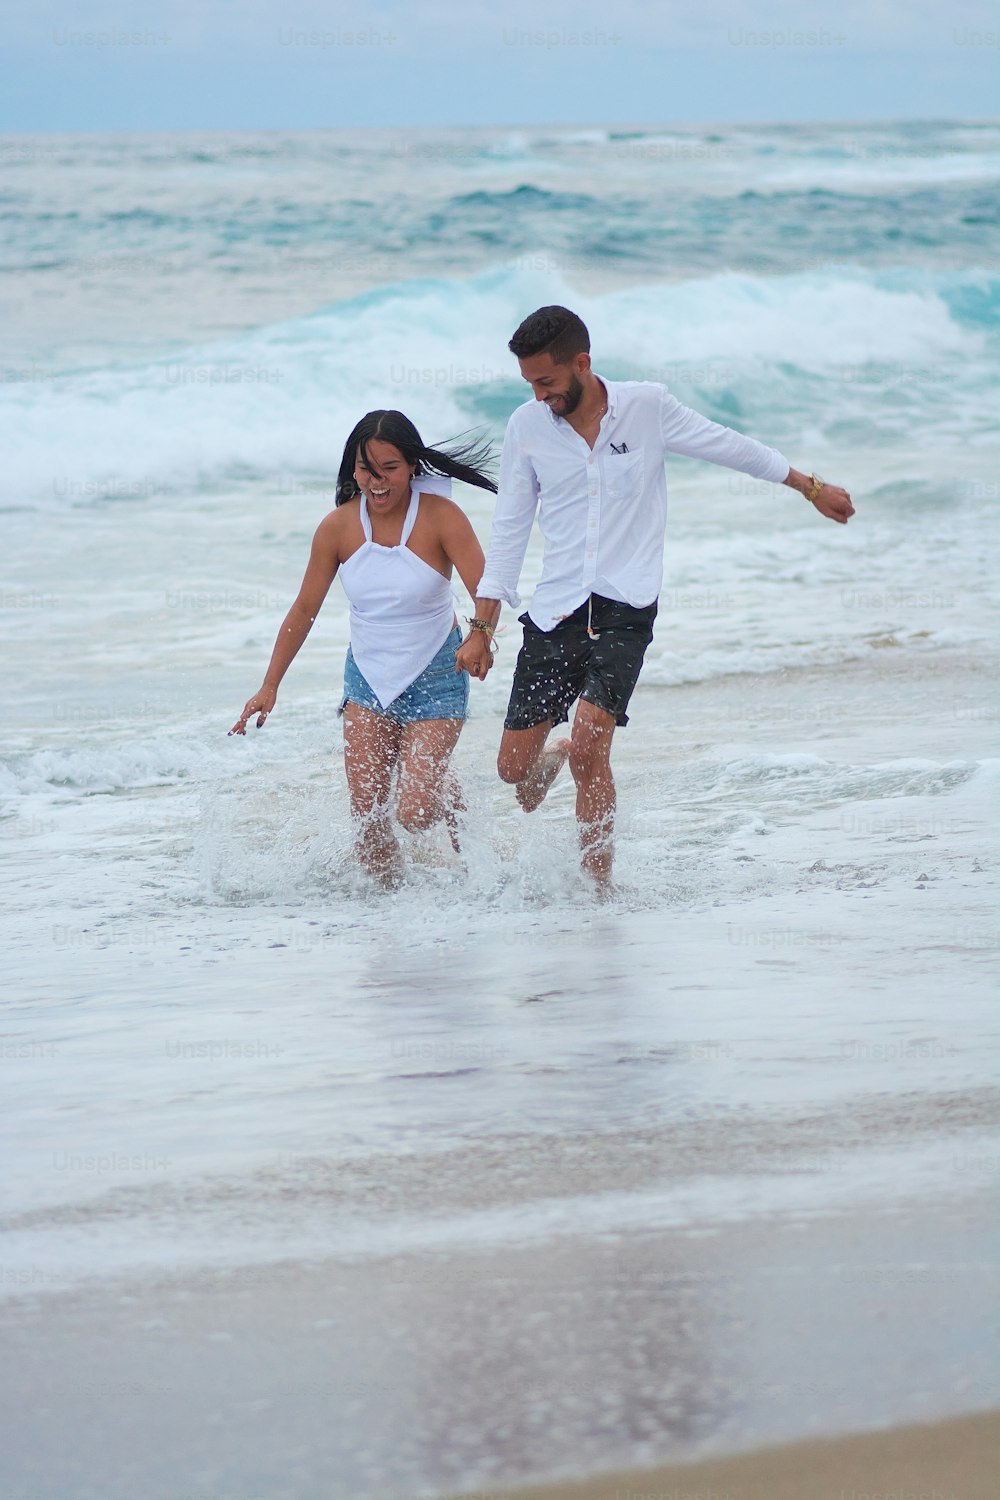 한 남자와 한 여자가 바다를 걷고 있다